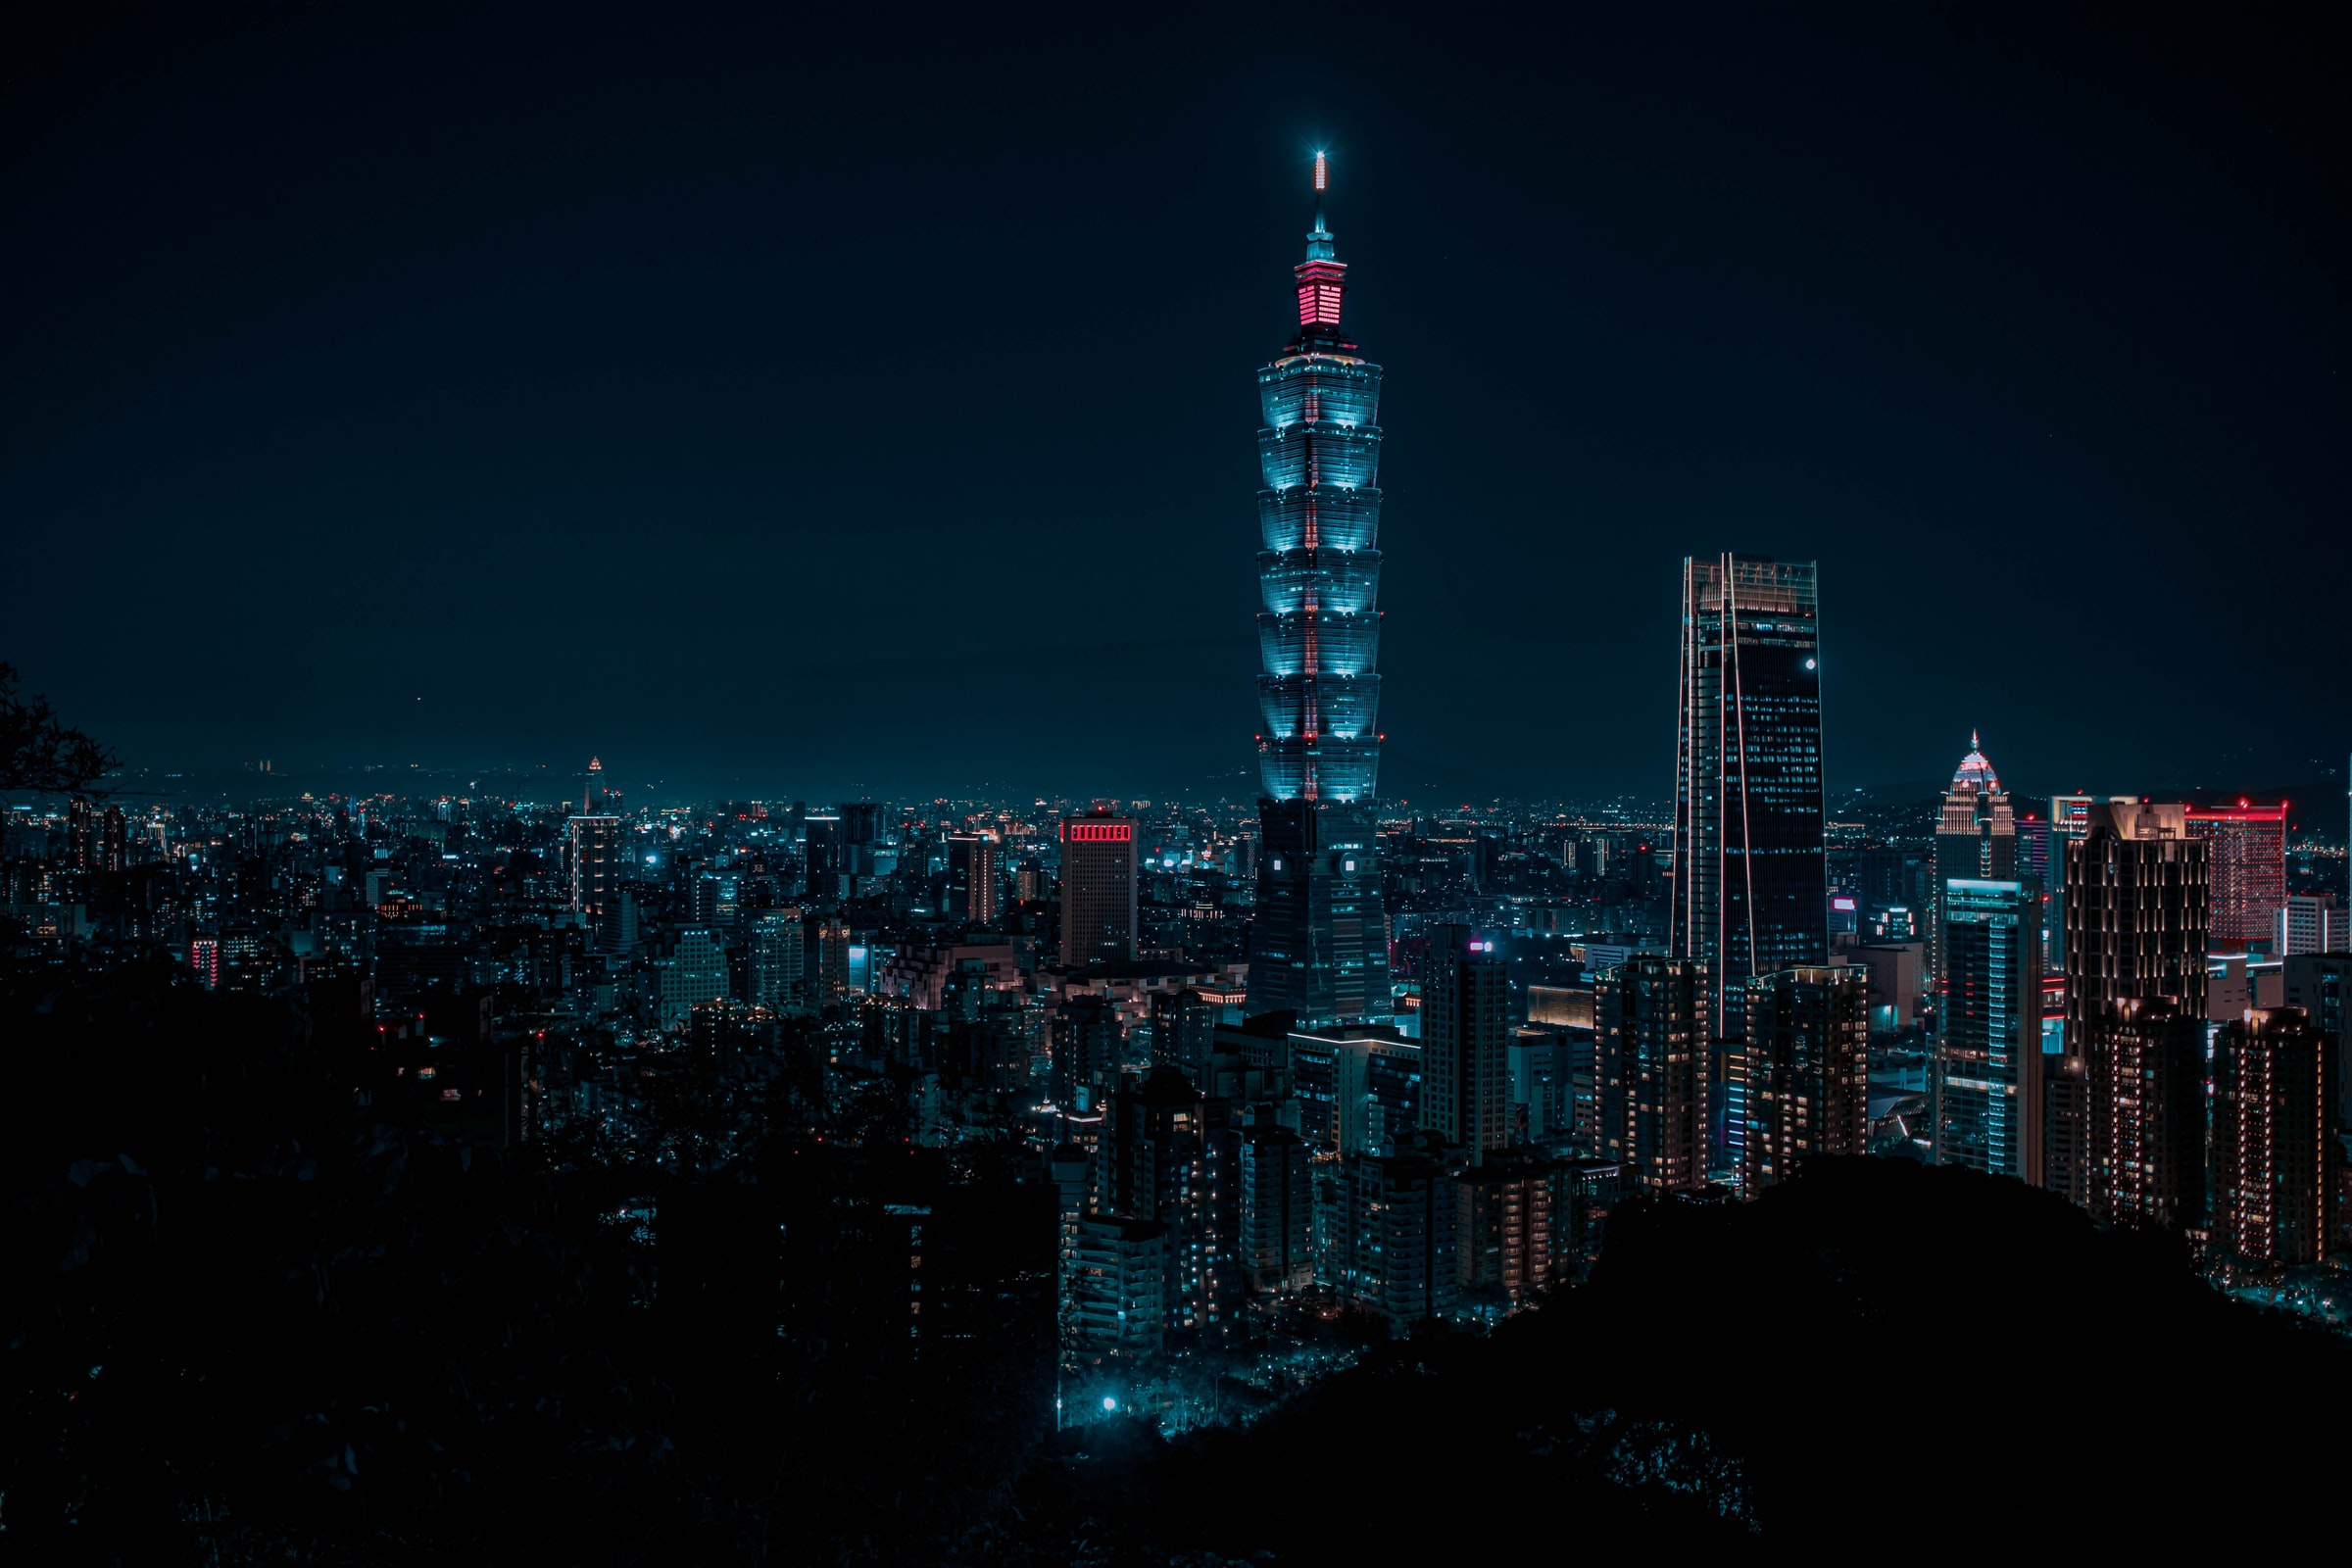 Taipei 101 Tower at night